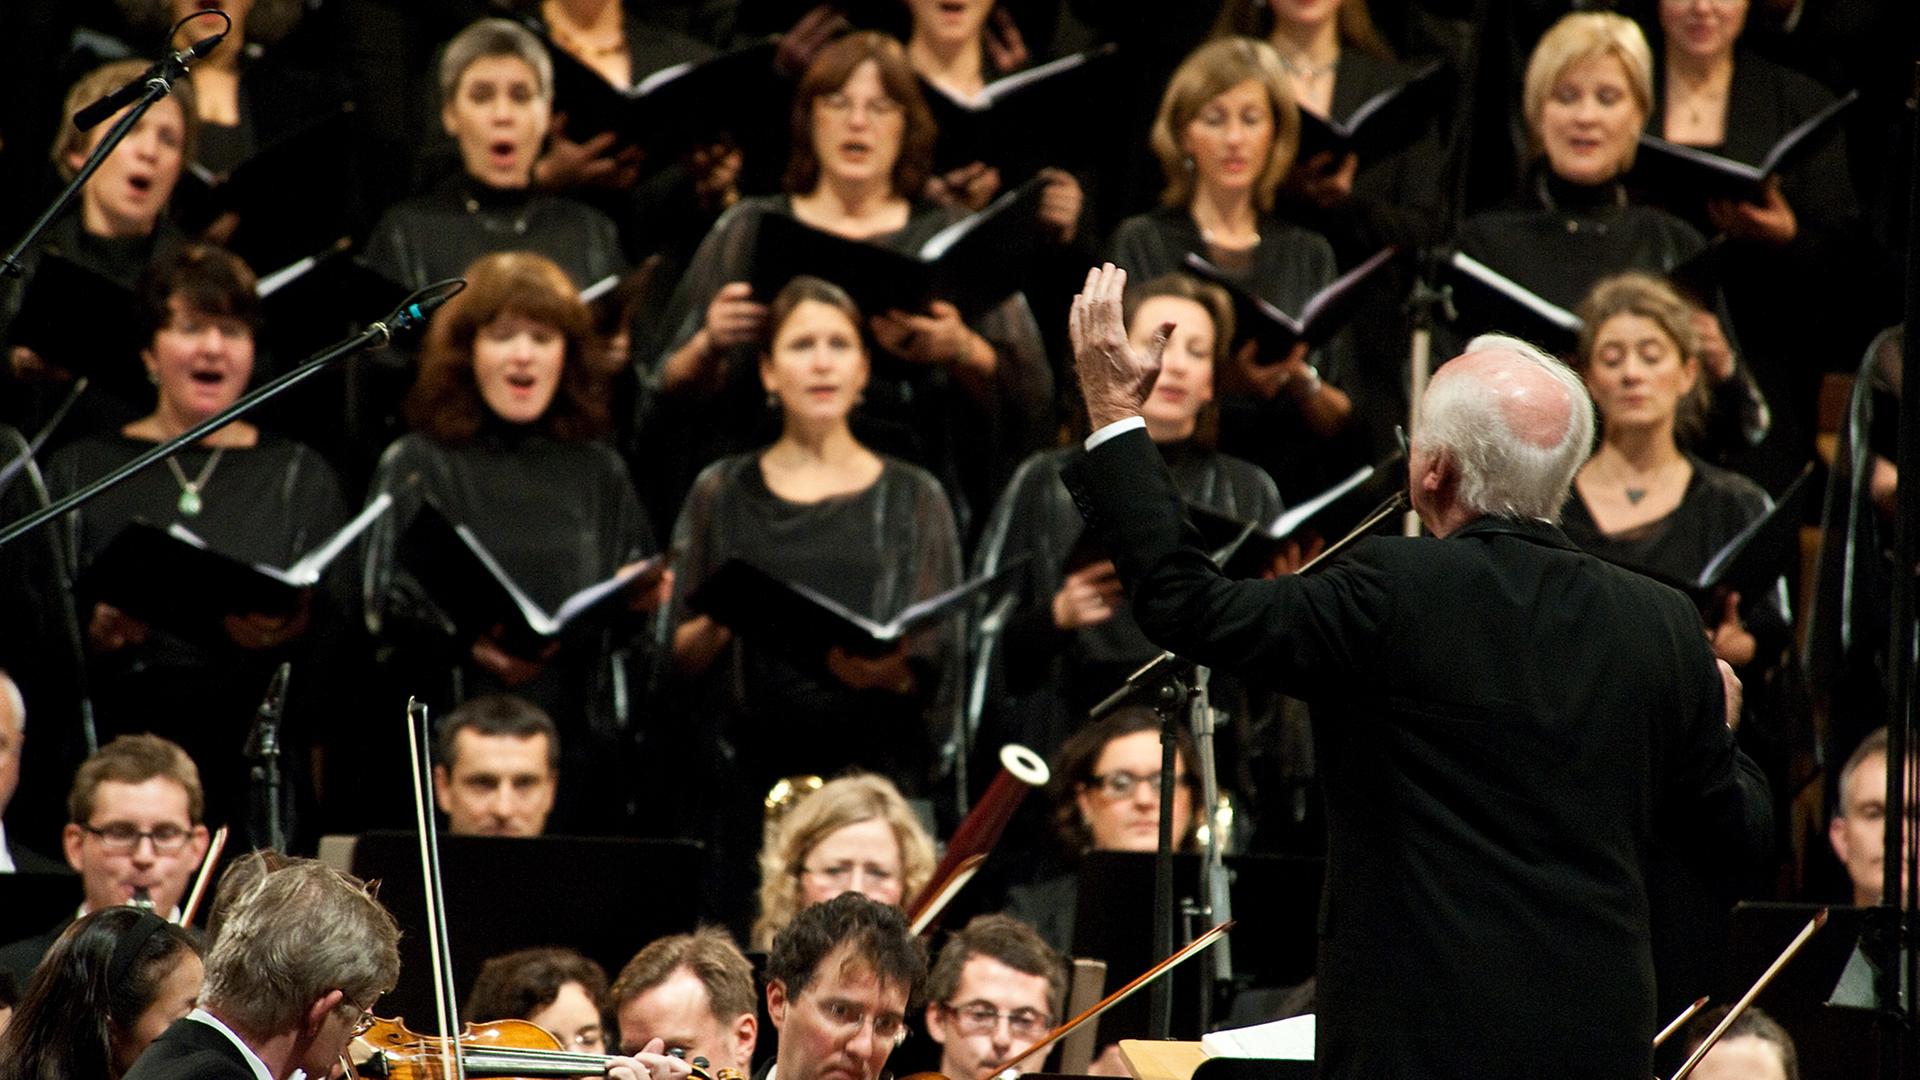 Chor mit Außenwirkung: Das Konzert "20 Jahre Mauerfall" im Berliner Dom